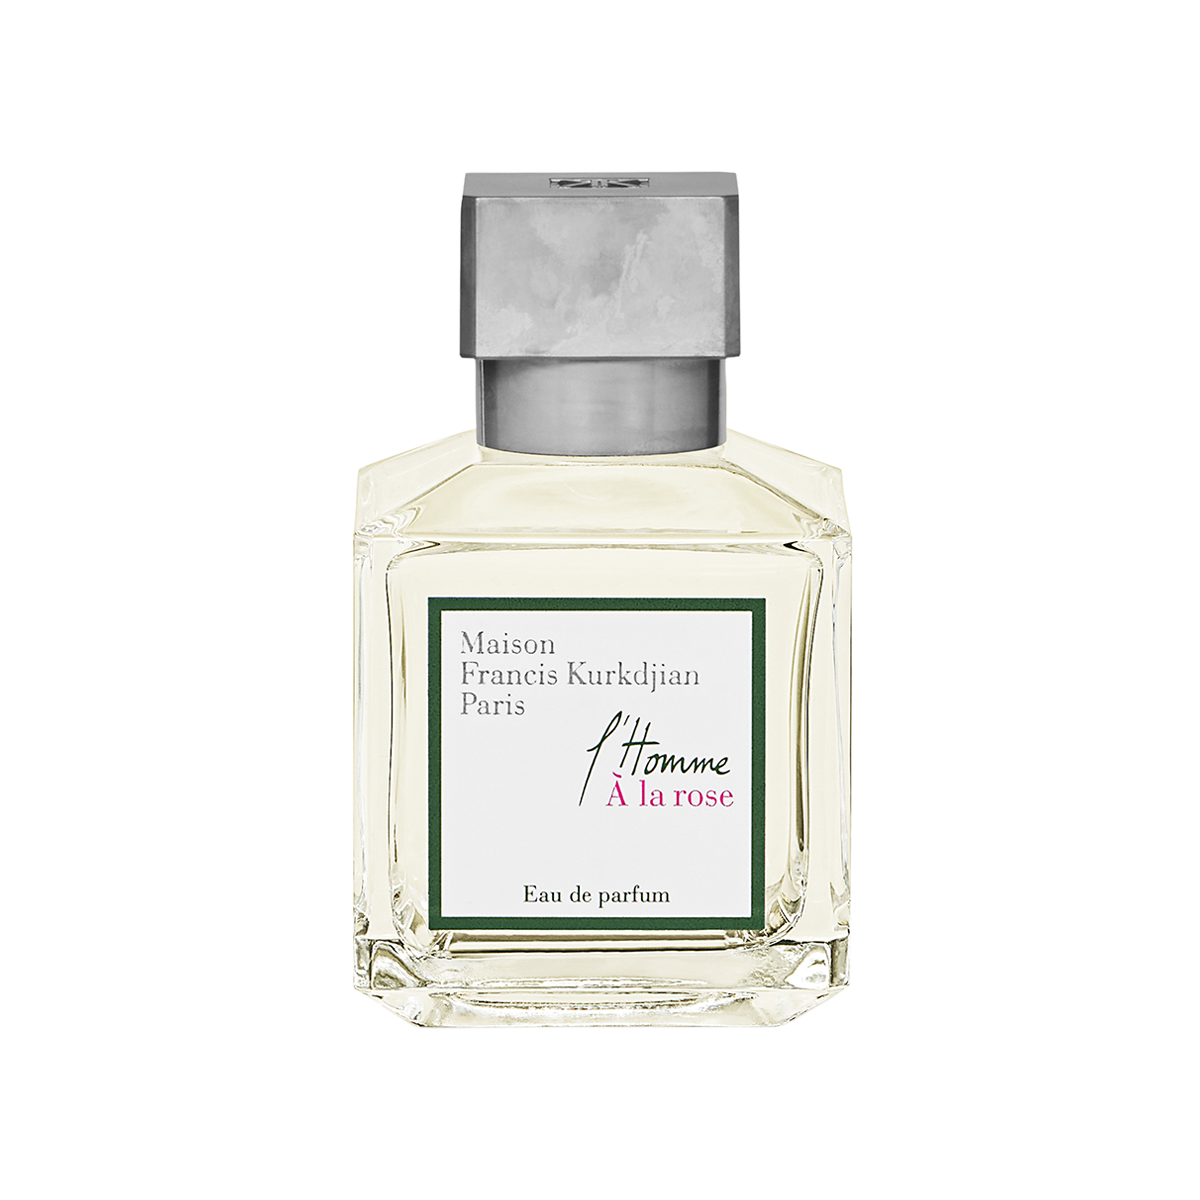 Maison Francis Kurkdjian - L'Homme a la rose Eau de Parfum